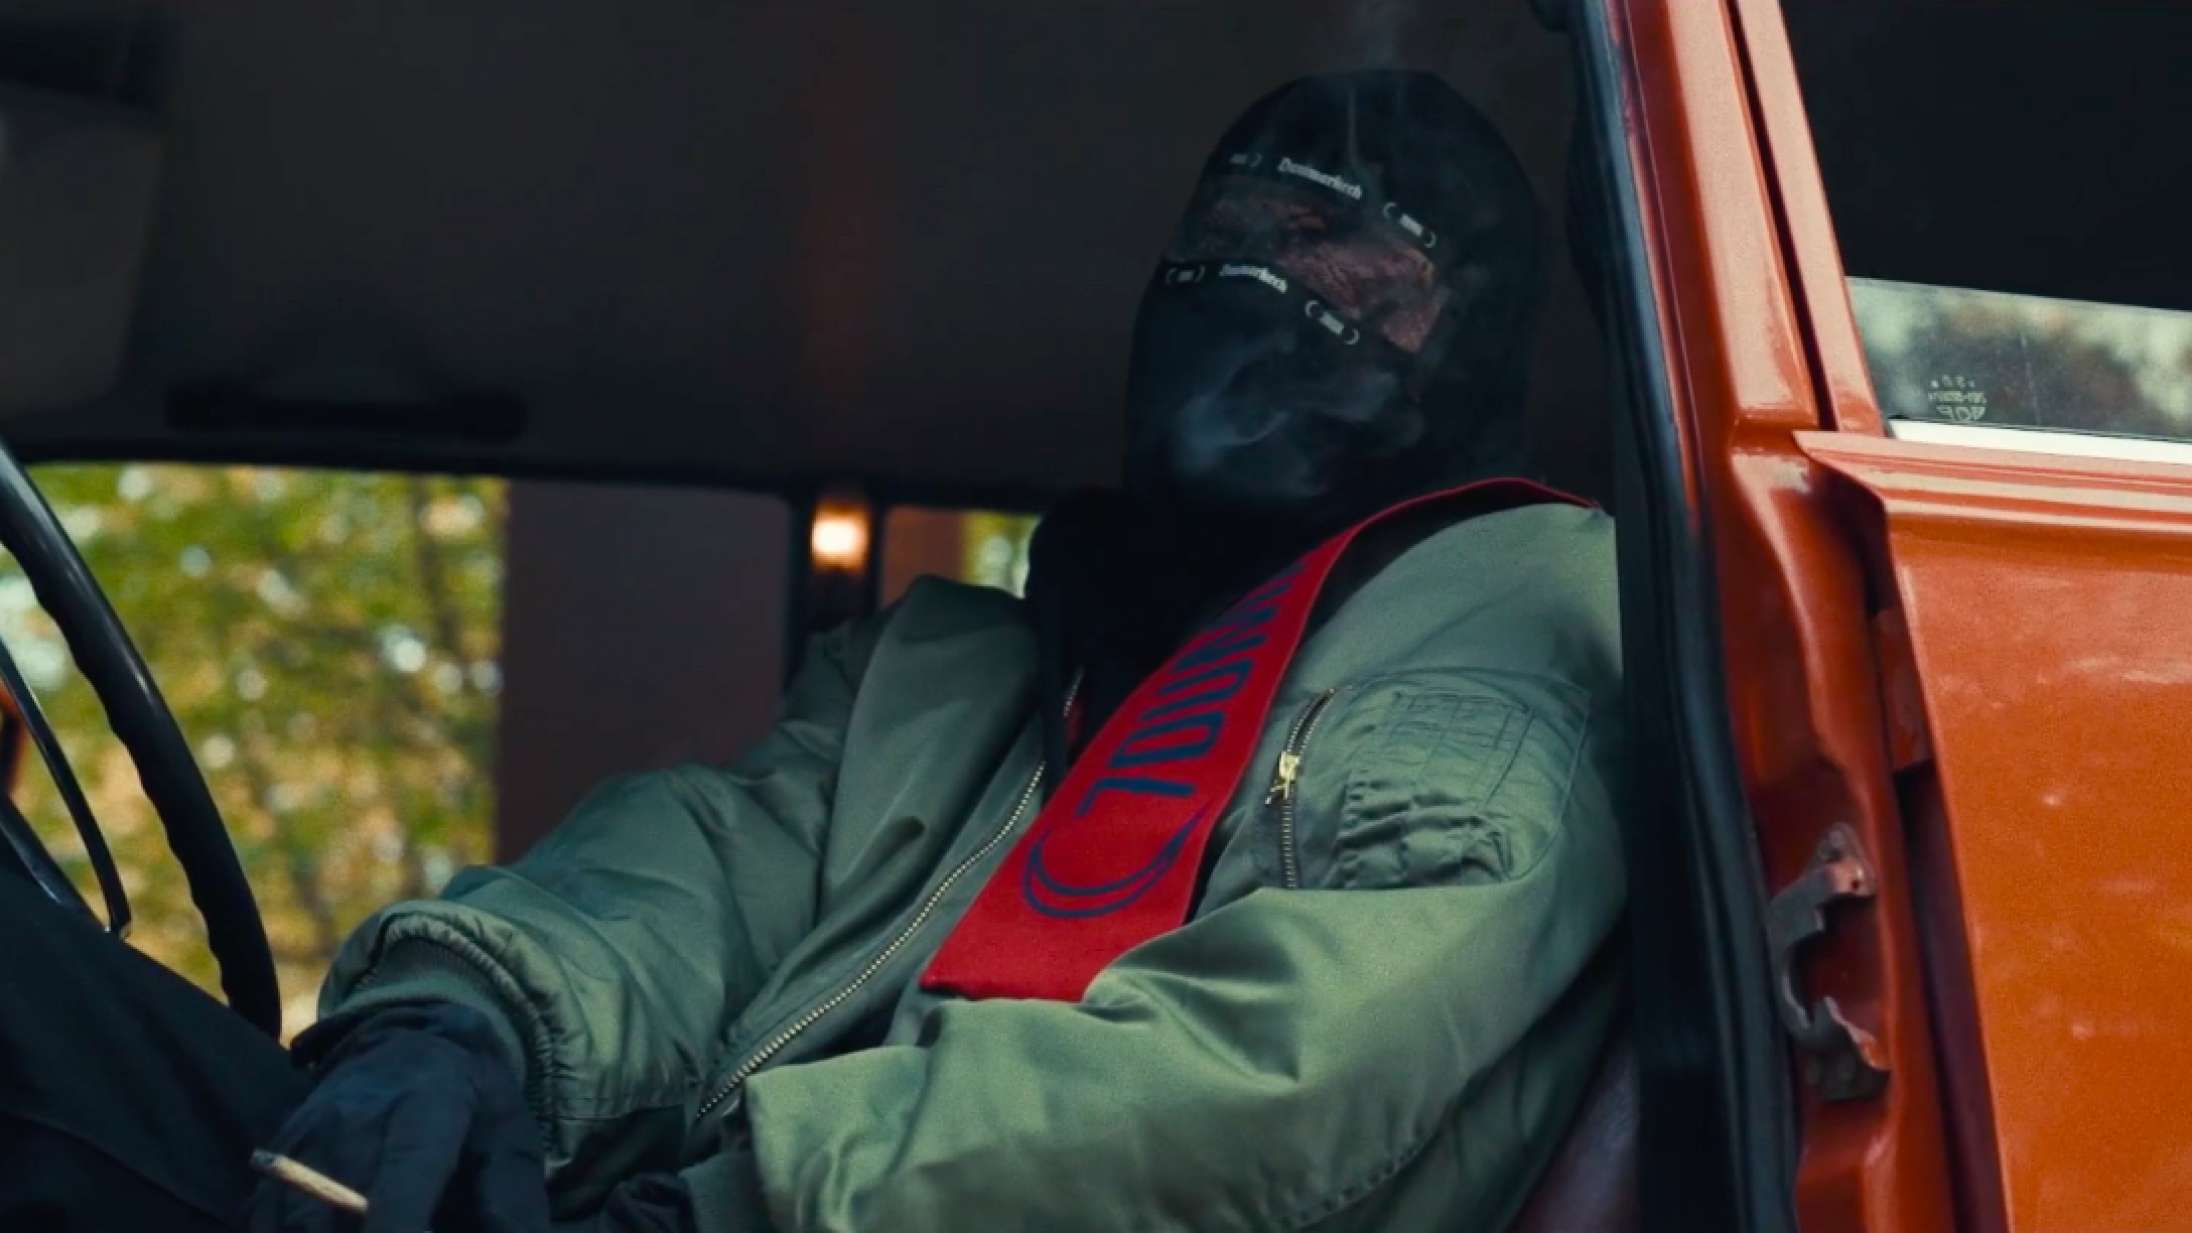 D1mas nye musikvideo er inspireret af en racistisk subkultur: »Usundt broderskab kommer i alle former og farver«